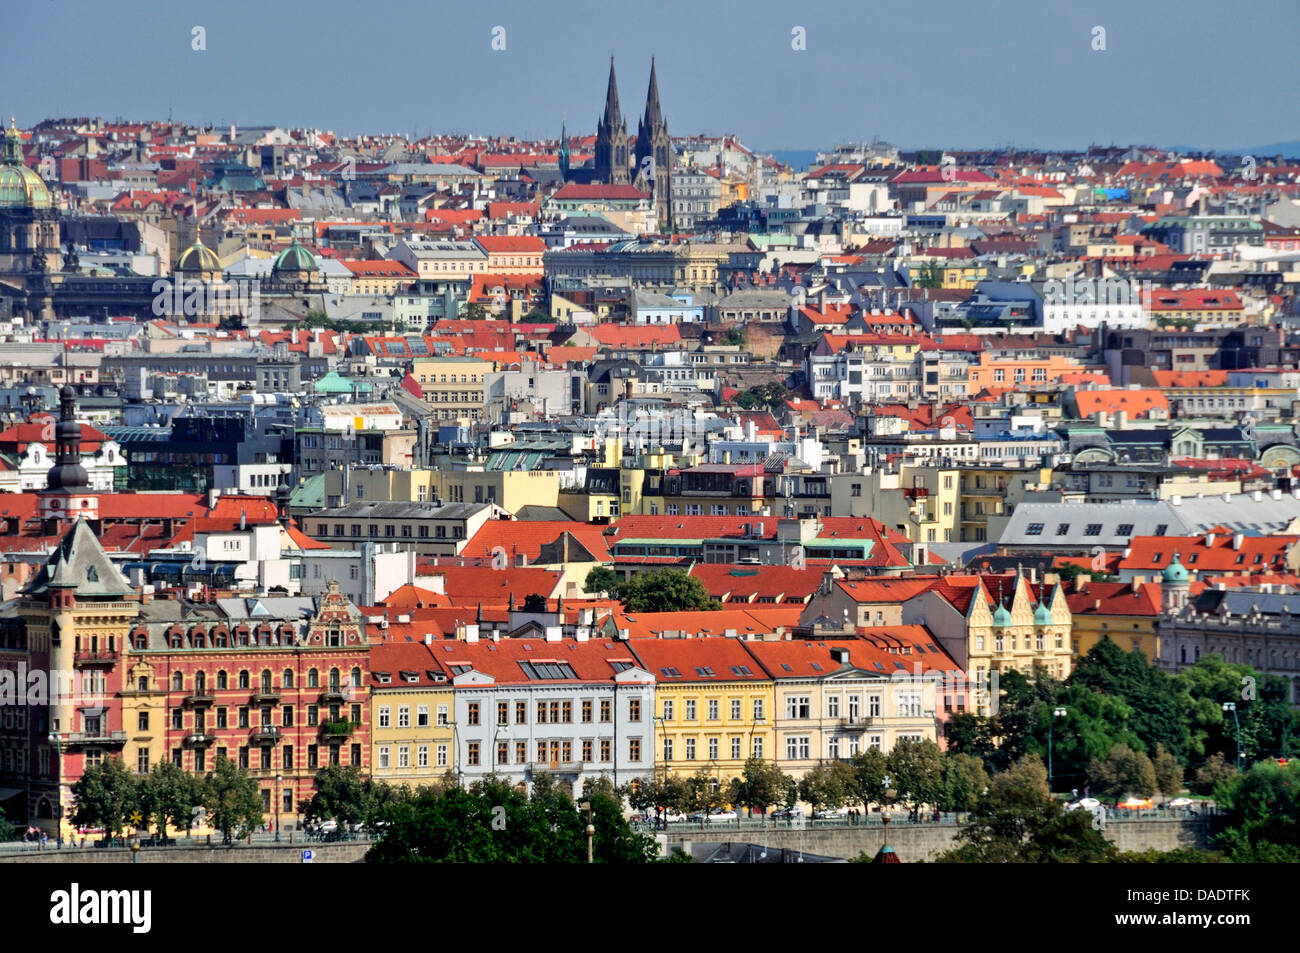 Vue panoramique sur la vieille ville, la République tchèque, la Bohême, Prague Banque D'Images